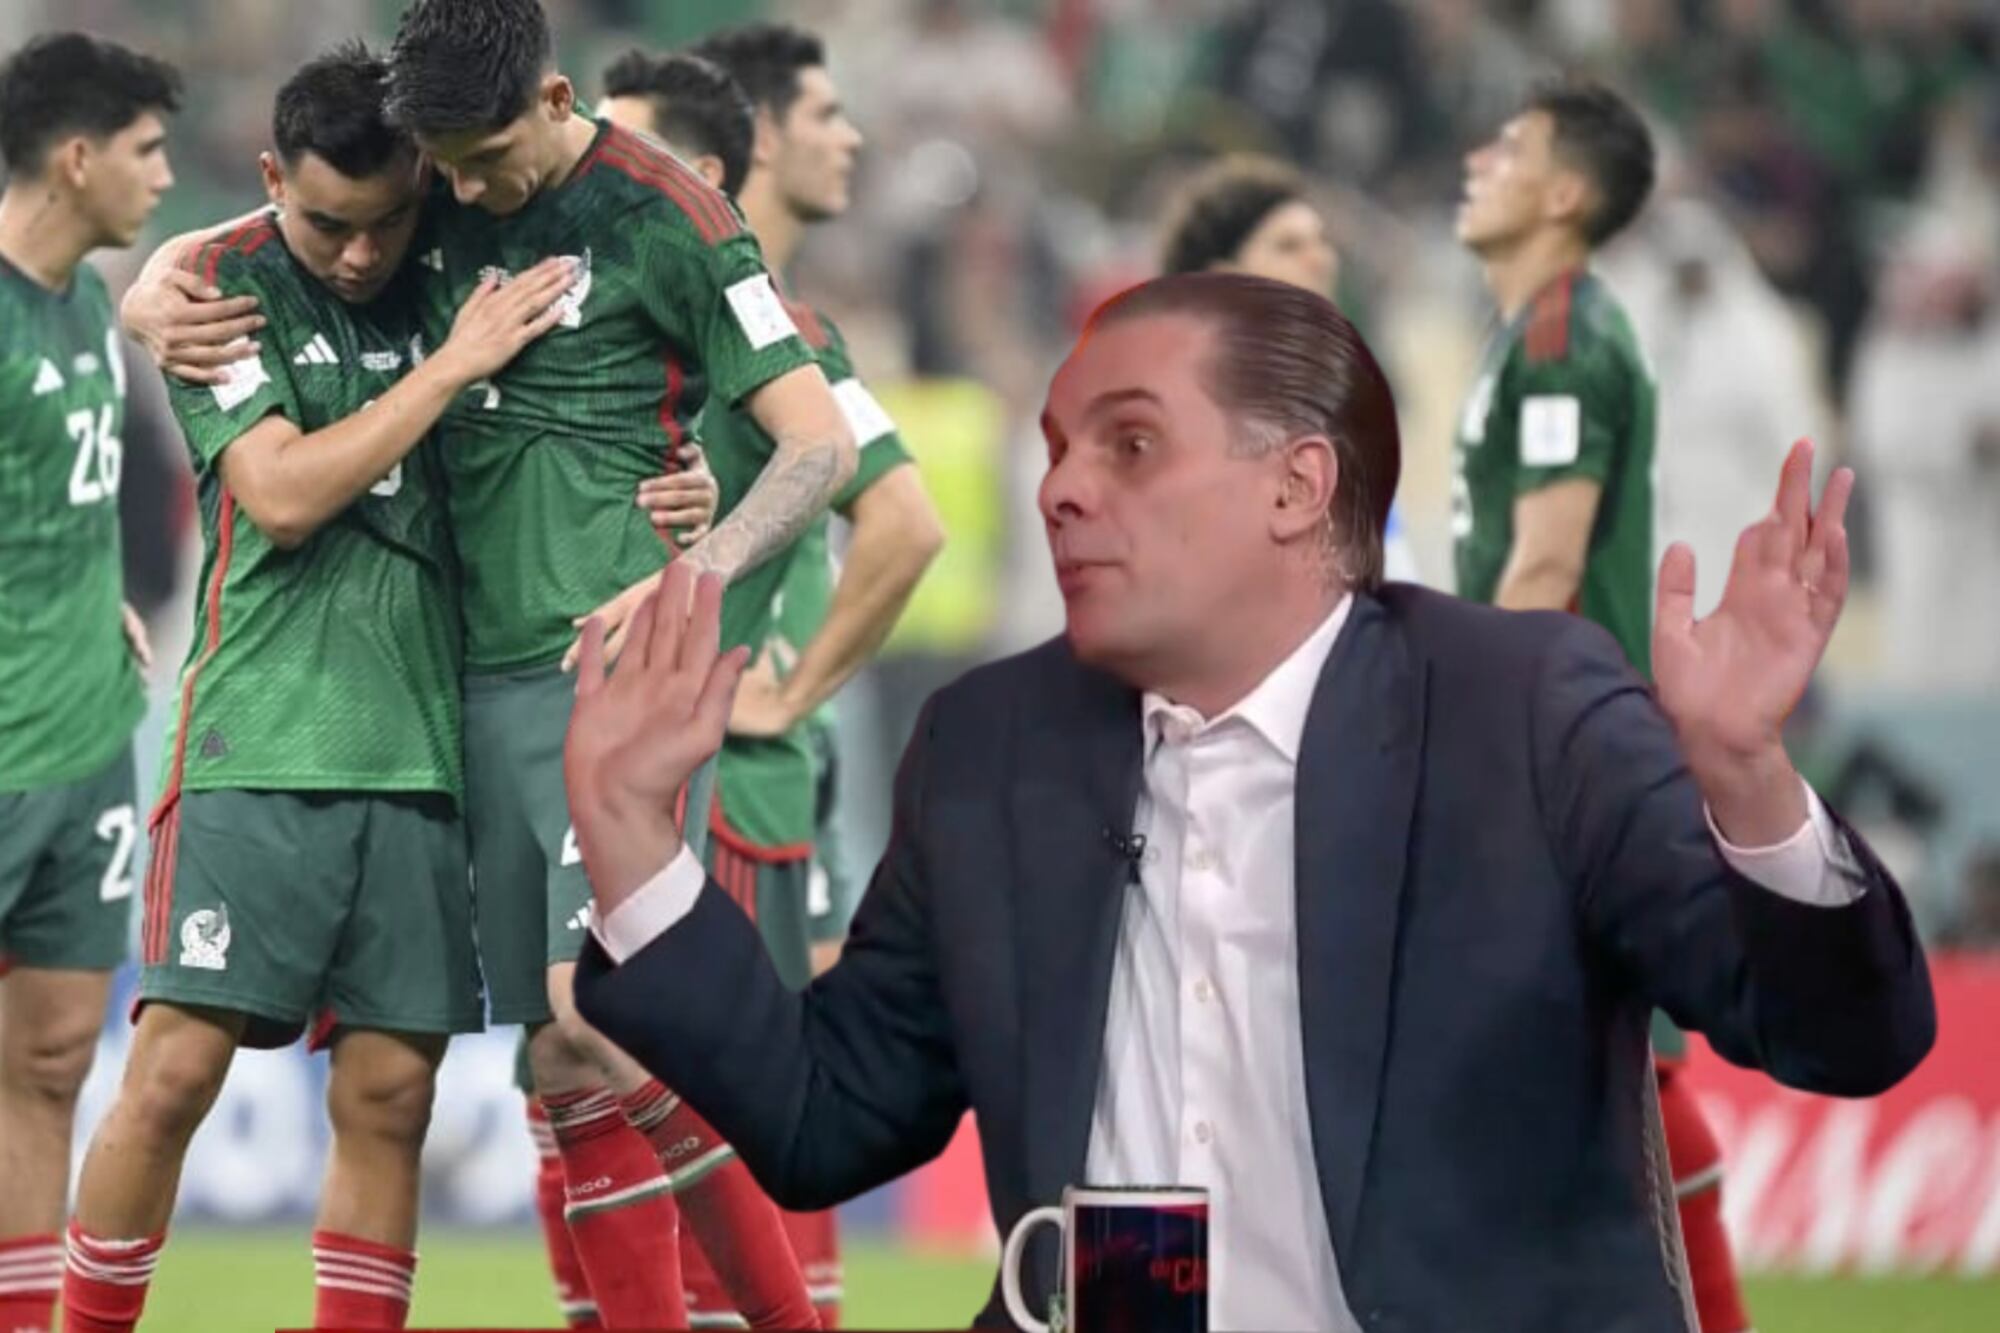 México y el porqué no da garantías de éxito para el Mundial 2026 según Martinoli